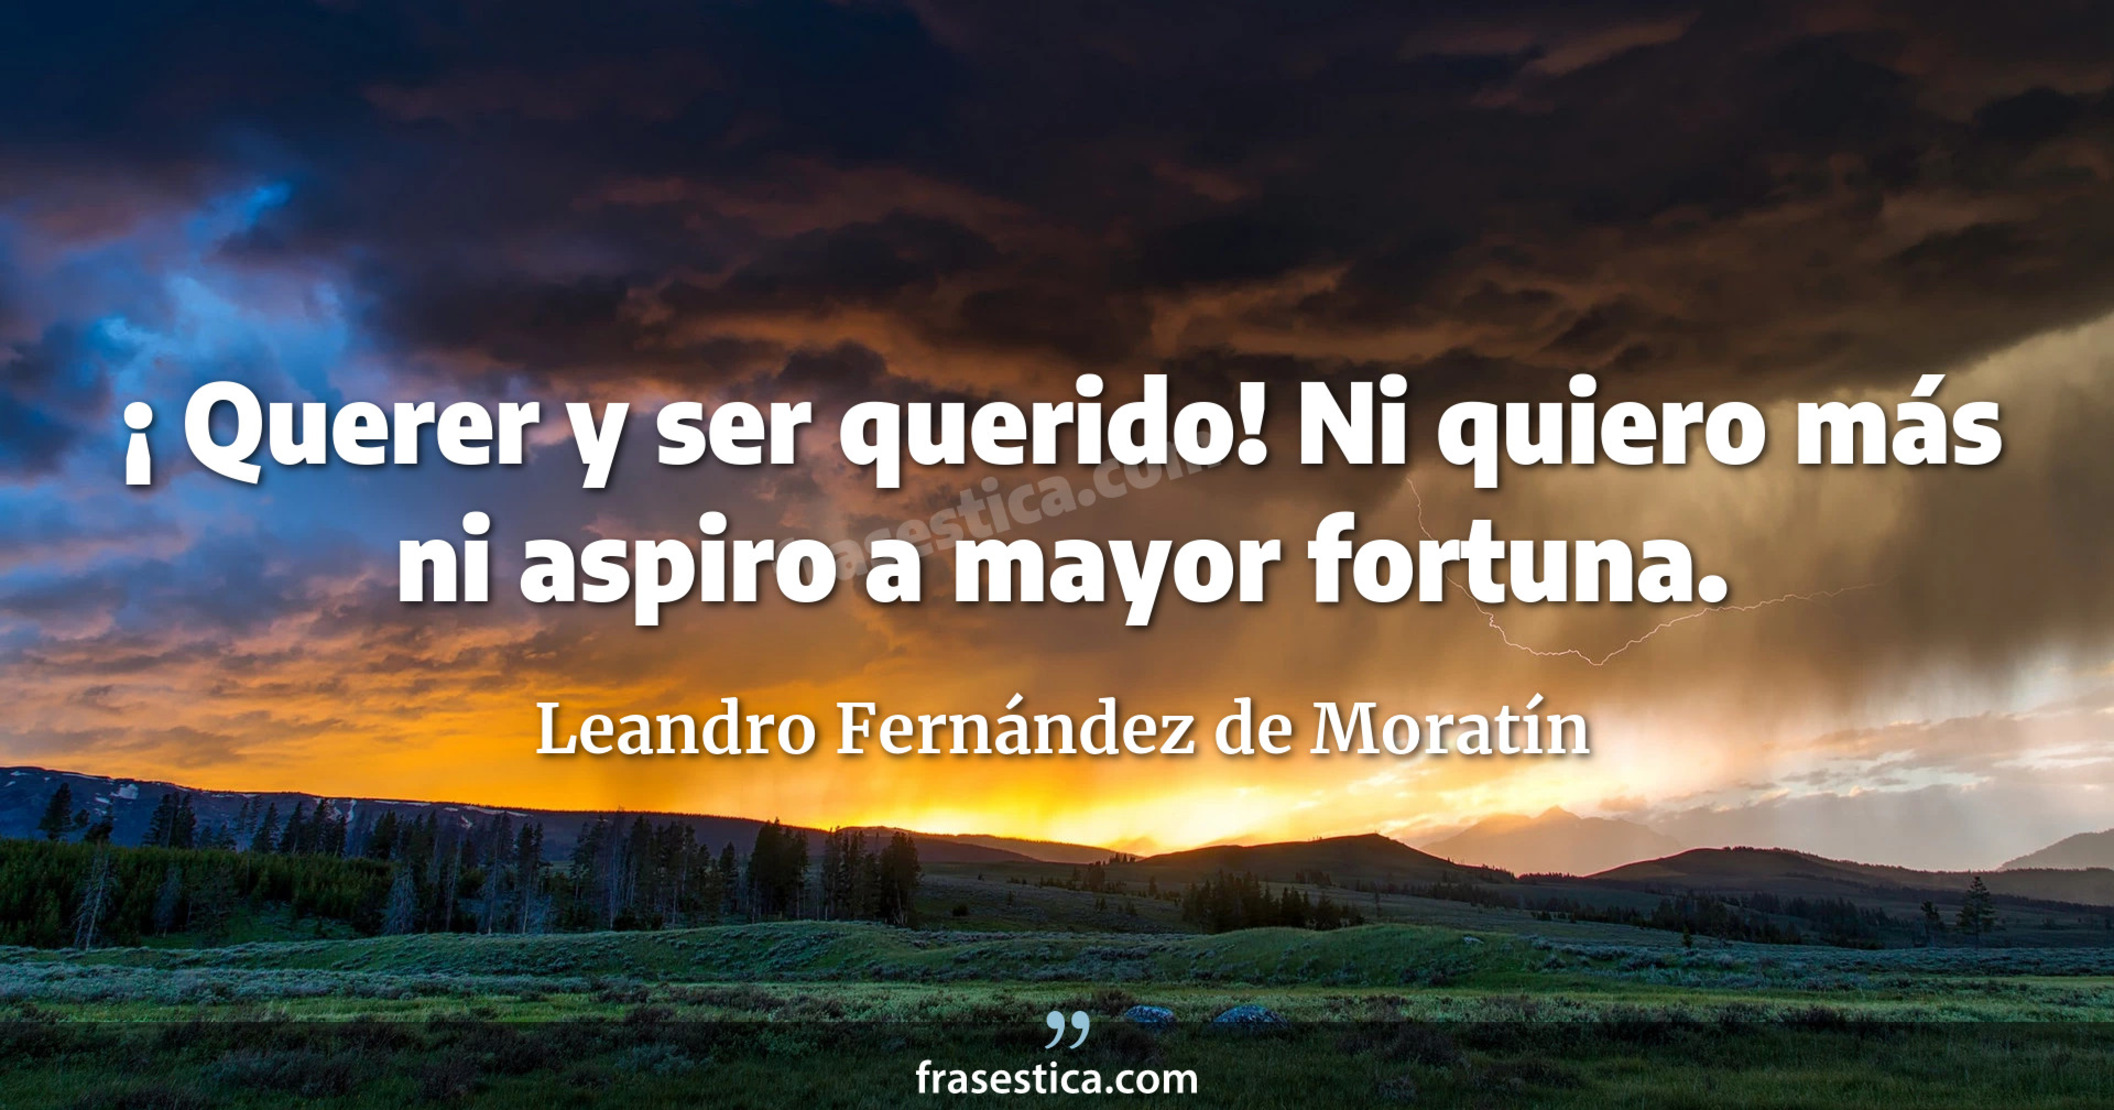 ¡ Querer y ser querido! Ni quiero más ni aspiro a mayor fortuna. - Leandro Fernández de Moratín